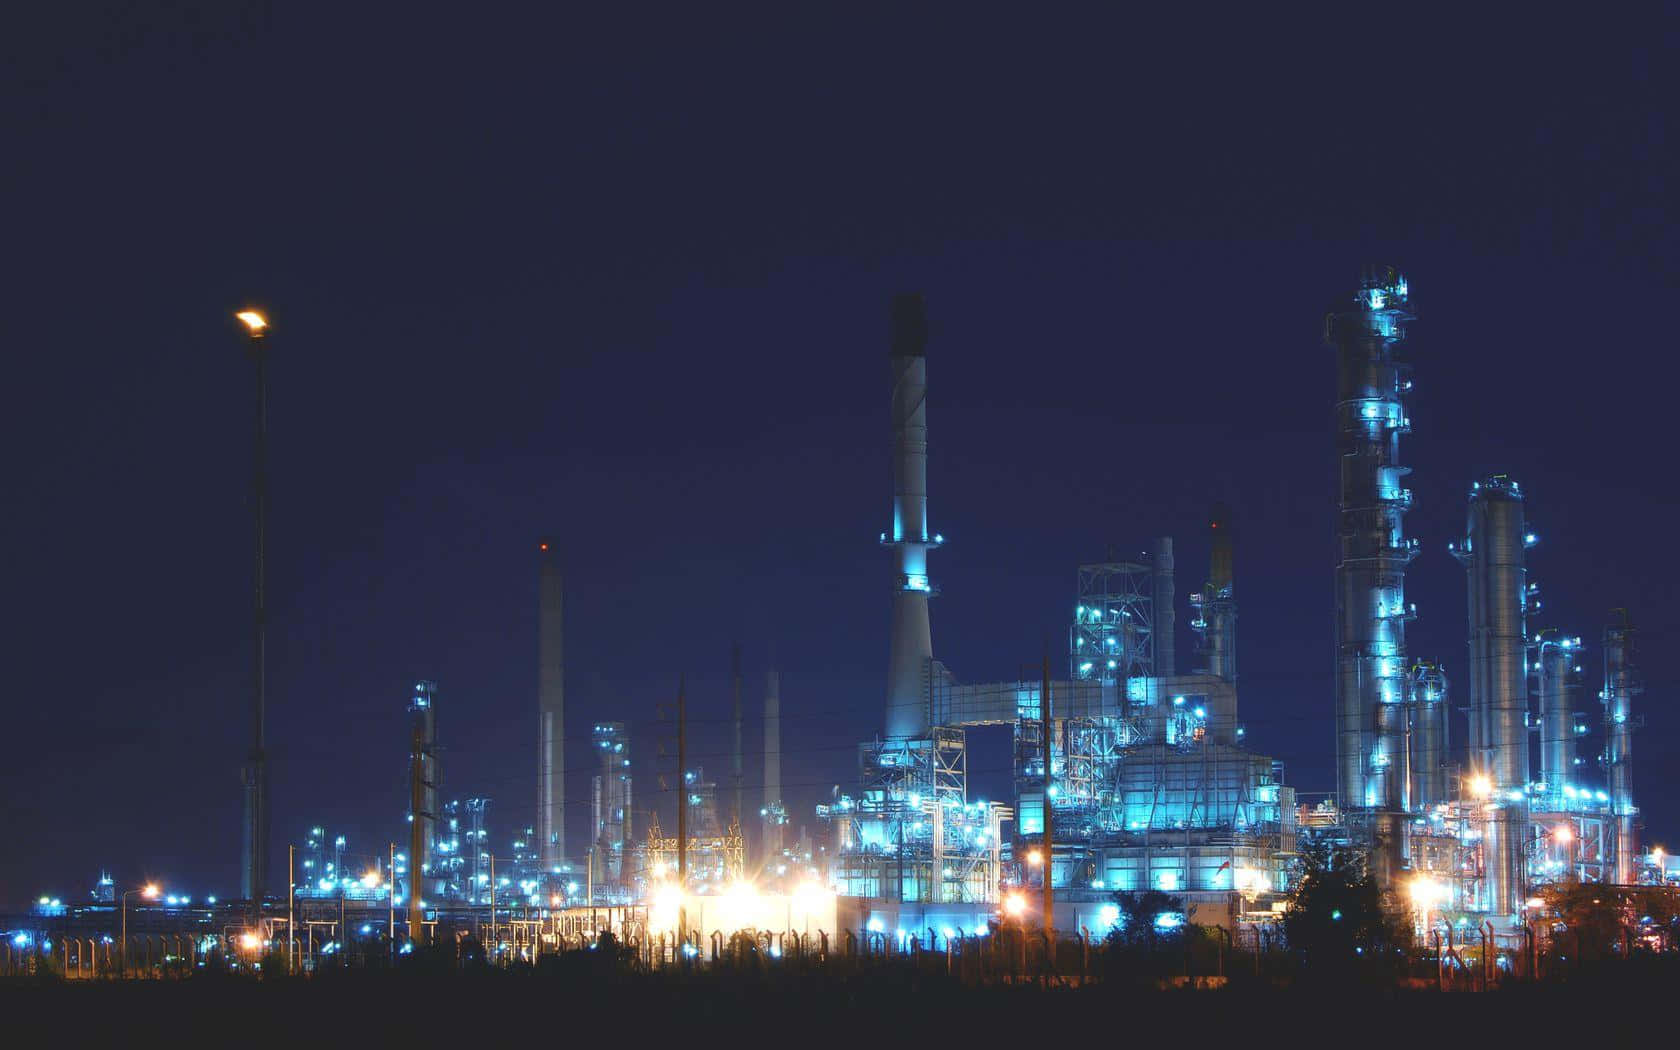 Industrial Nighttime Factory Landscape.jpg Wallpaper